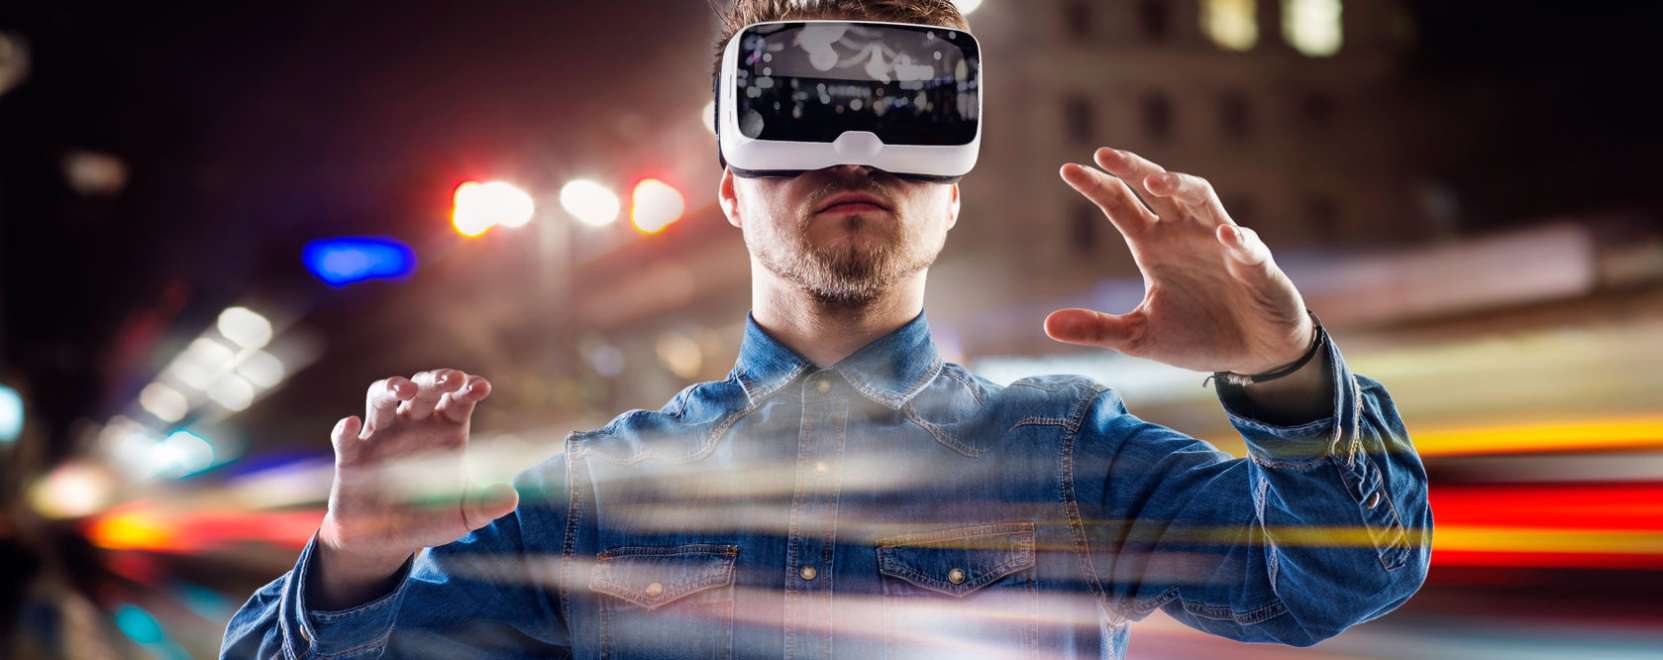 Térbelibb élménnyé válik a virtuális valóság